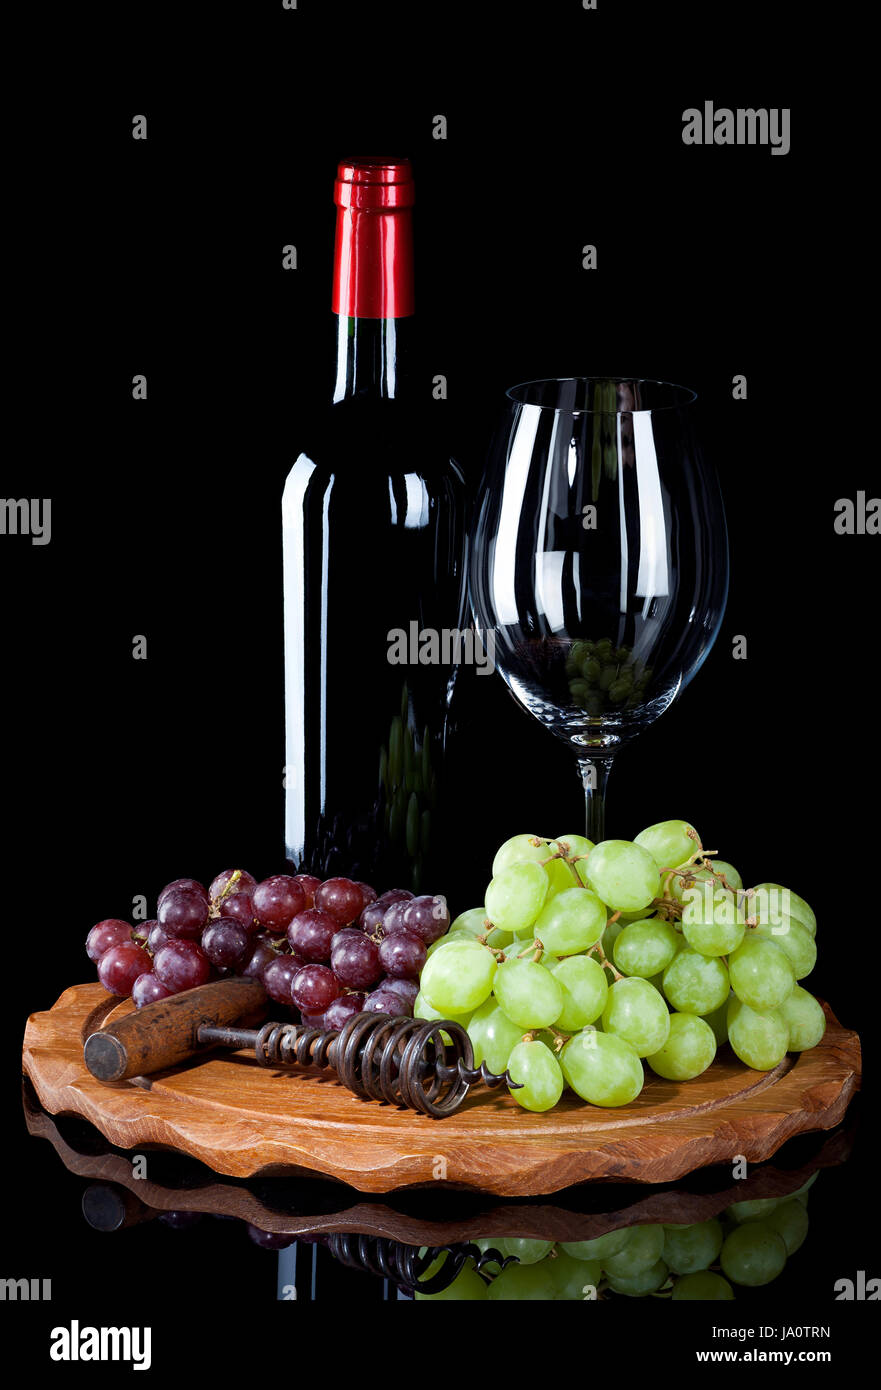 Bere acqua potabile, bavaglini, vino, vetro, un calice di vino, glas, uva, bottiglia, Foto Stock